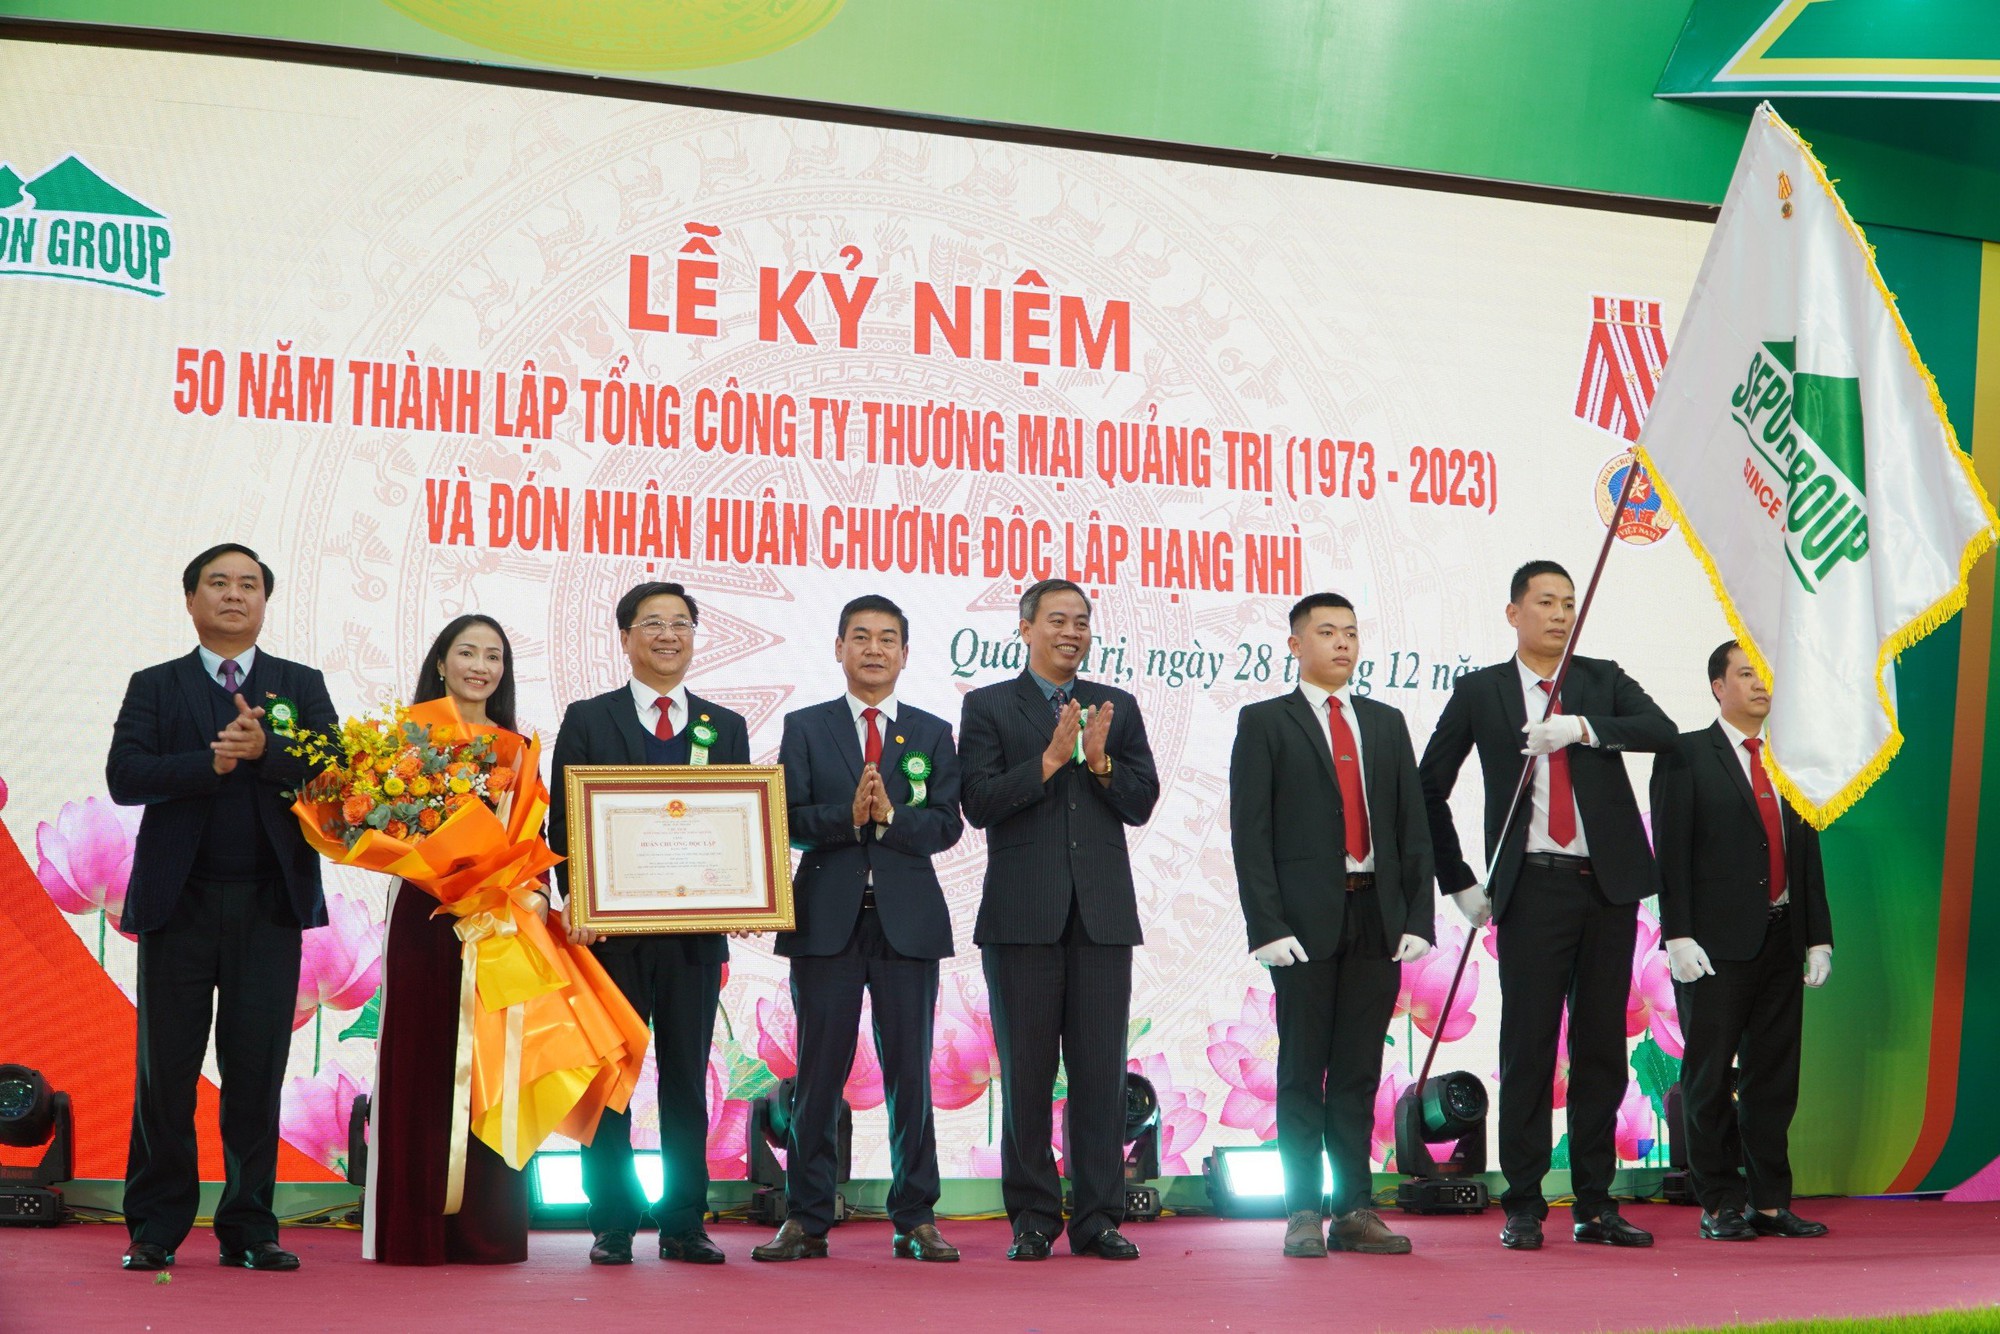 Tổng Công ty Thương mại Quảng Trị đón nhận Huân chương độc lập hạng Nhì - Ảnh 1.